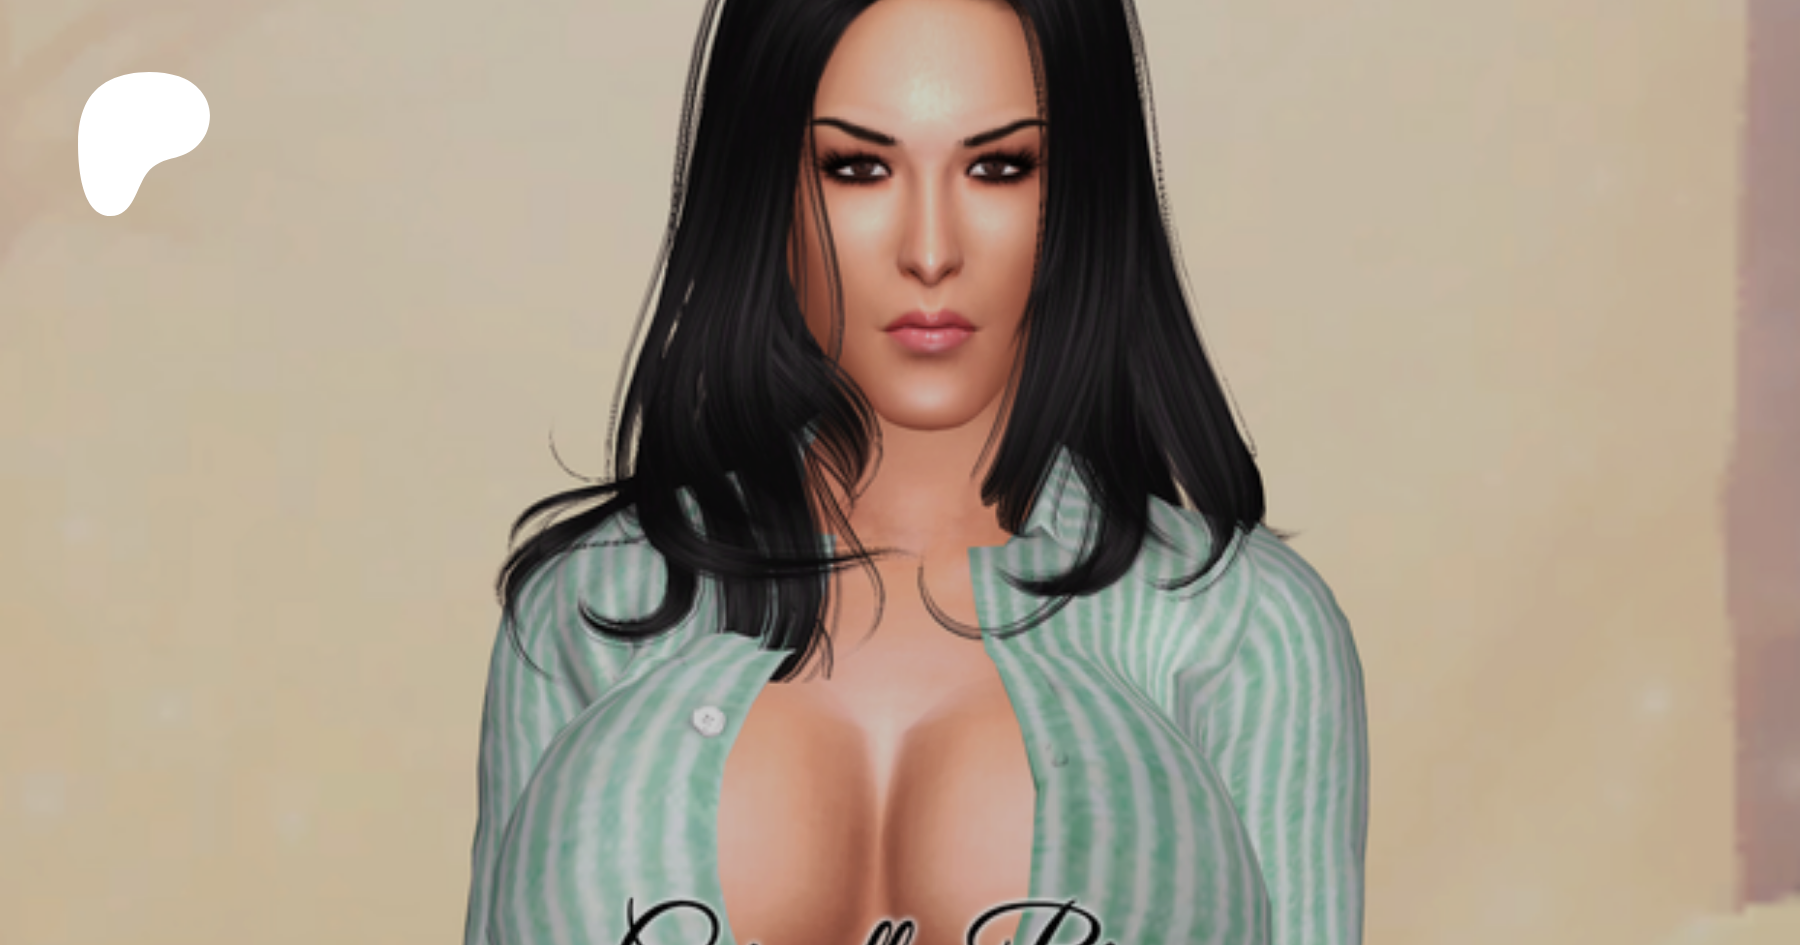 Sims 4 CAS: Carmella Bing | Patreon